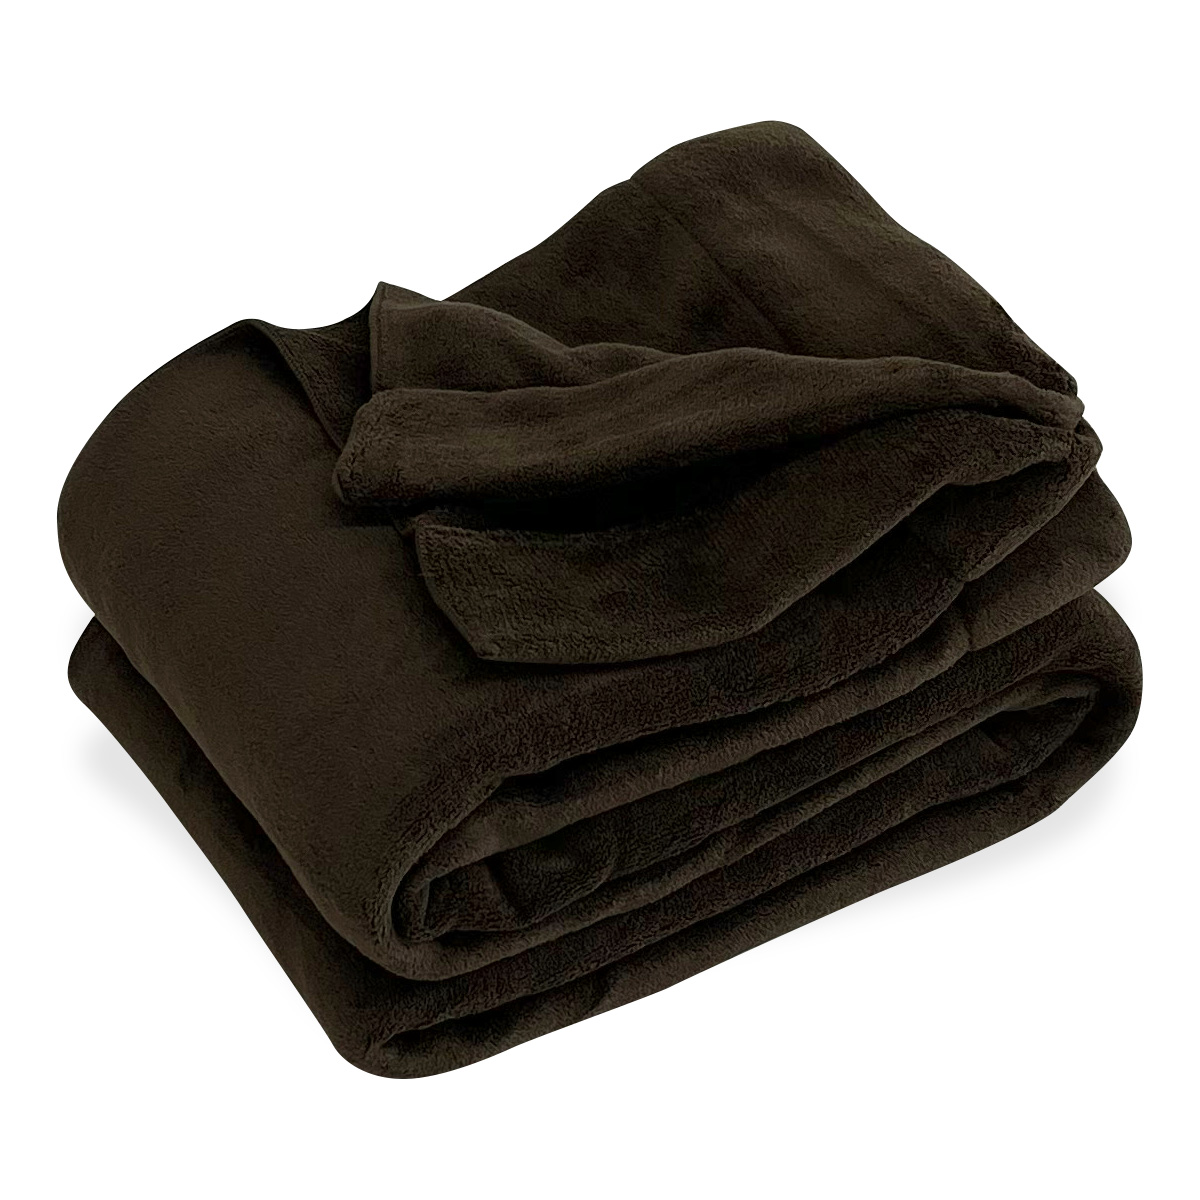 オールシーズン使える シャーリングケット シングルサイズ ブランケット 毛布 タオルケット 吸水速乾